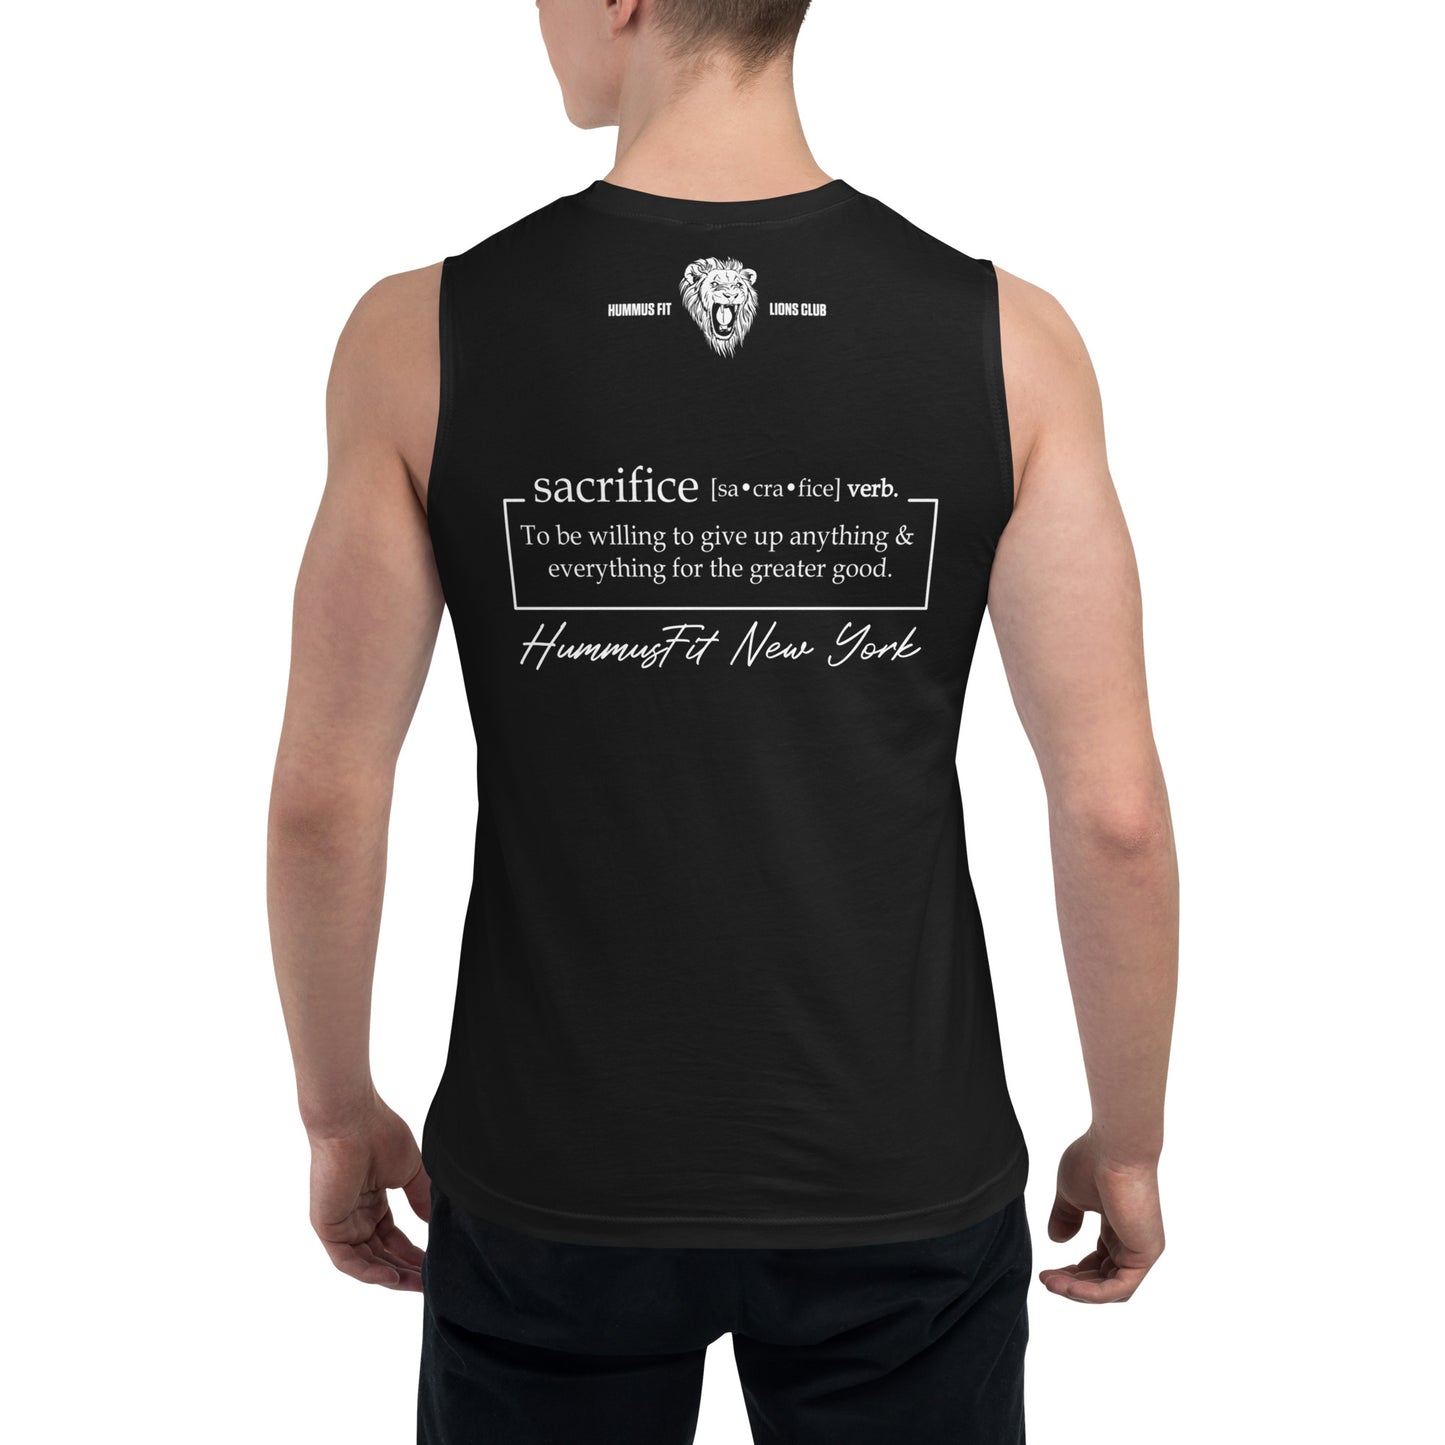 Camisa muscular de sacrificio unisex (negro)